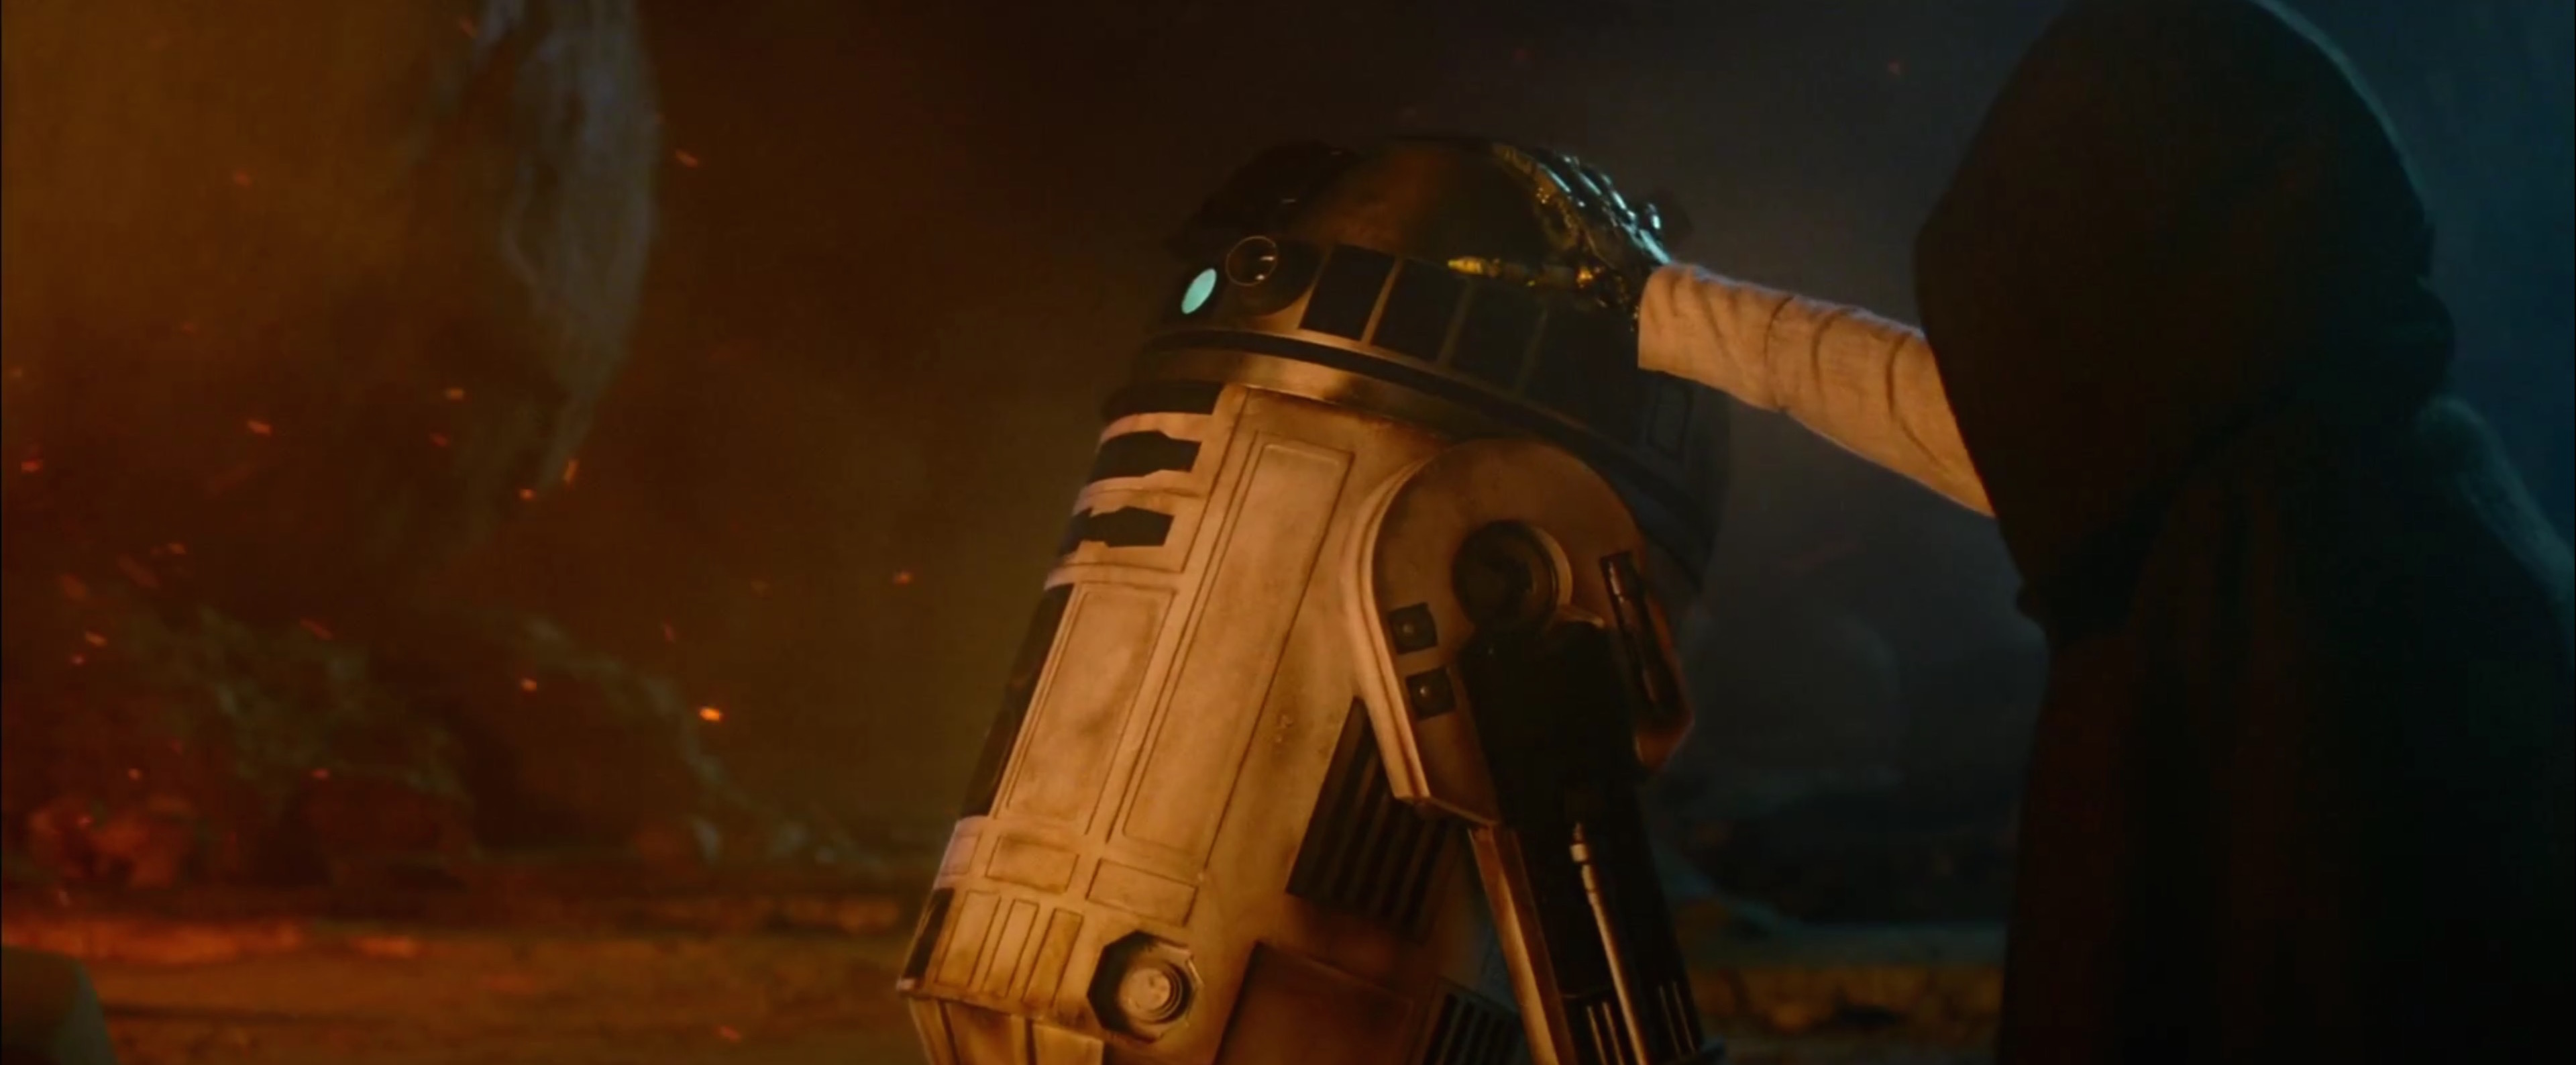 Star Wars VII The Force Awakens New Trailer 0 Fubiz Media